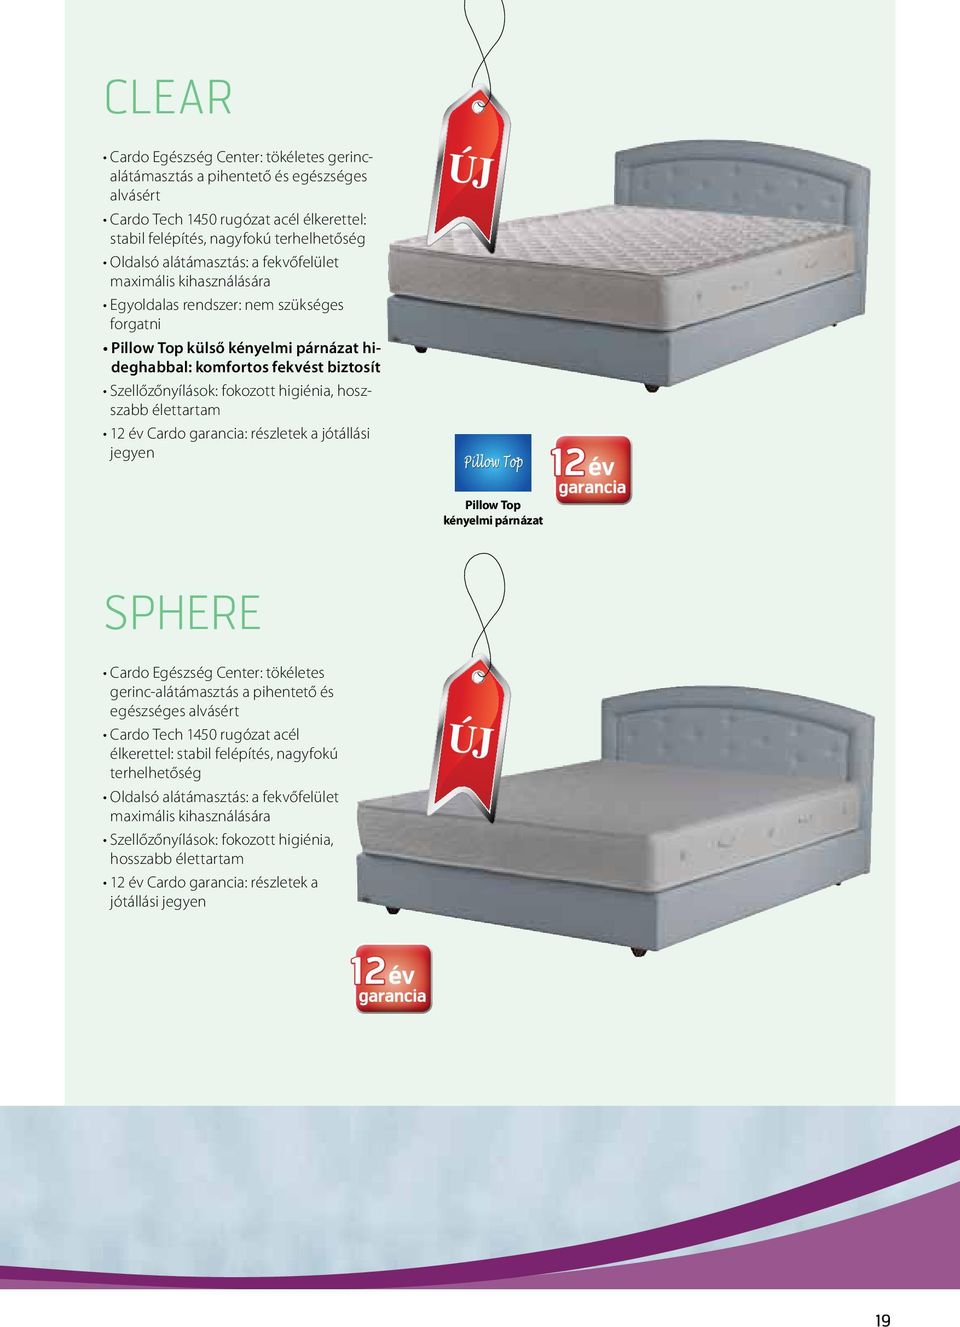 hoszszabb élettartam 12 év Cardo garancia: részletek a jótállási jegyen 12 Pillow Top kényelmi párnázat Sphere Cardo Egészség Center: tökéletes gerinc-alátámasztás a pihentető és egészséges alvásért